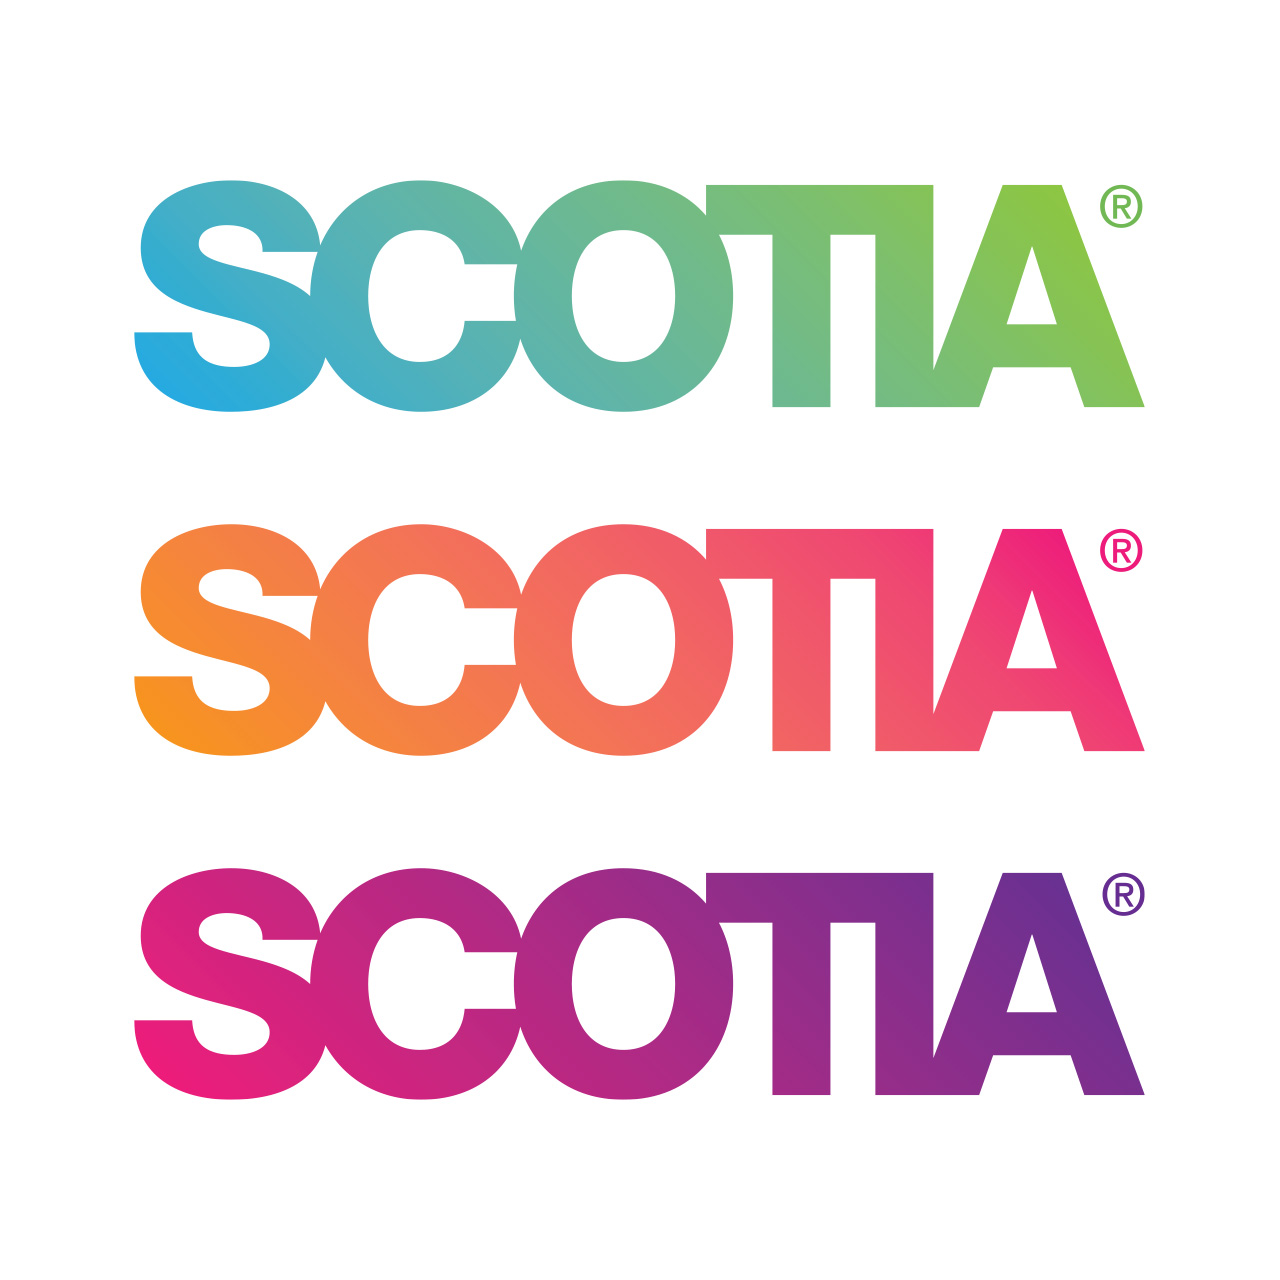 Scotia logos